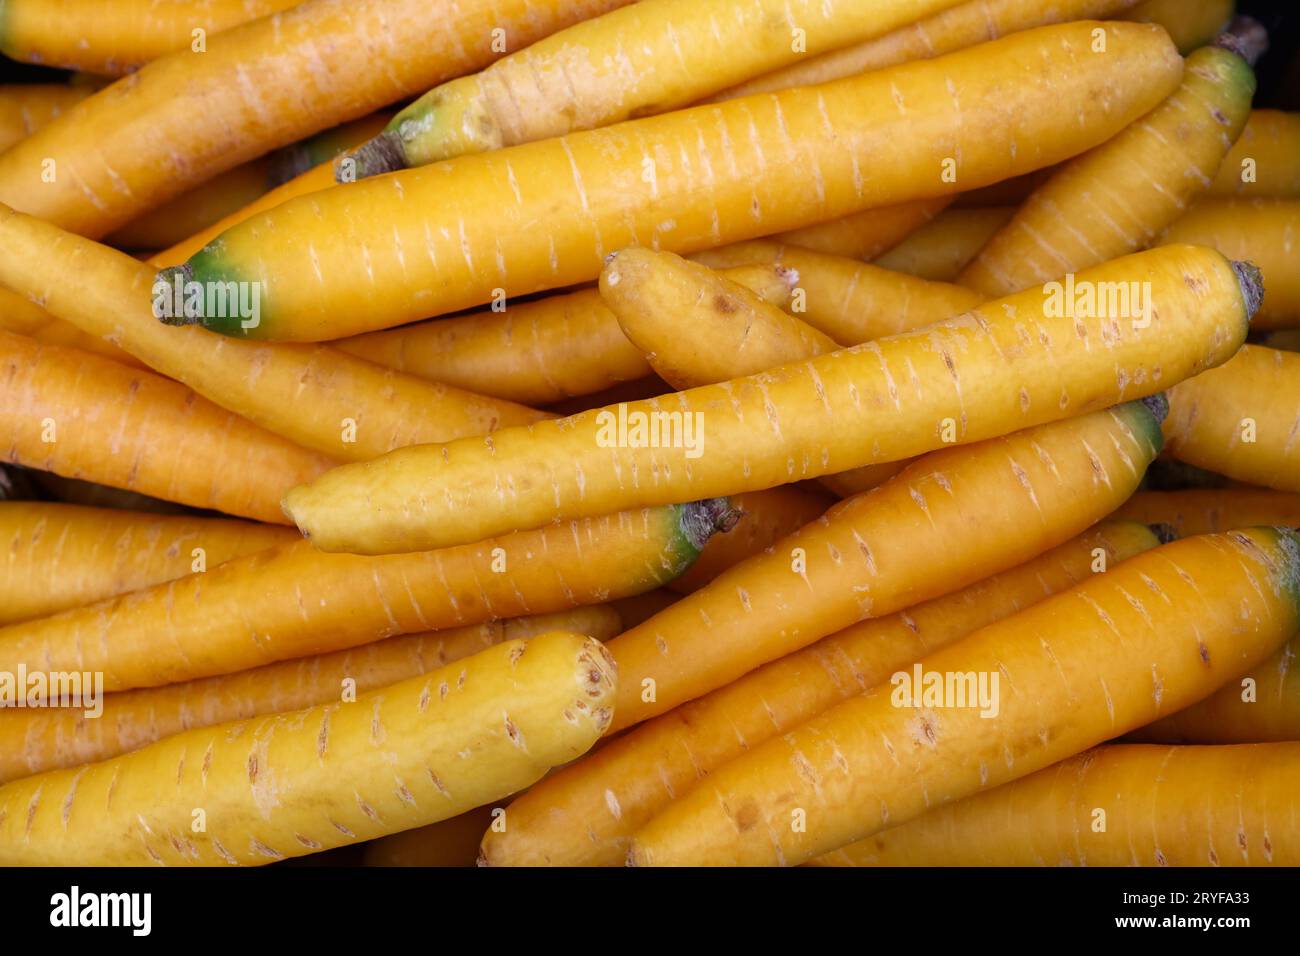 Tas de nouvelles carottes jaunes de printemps fraîches Banque D'Images